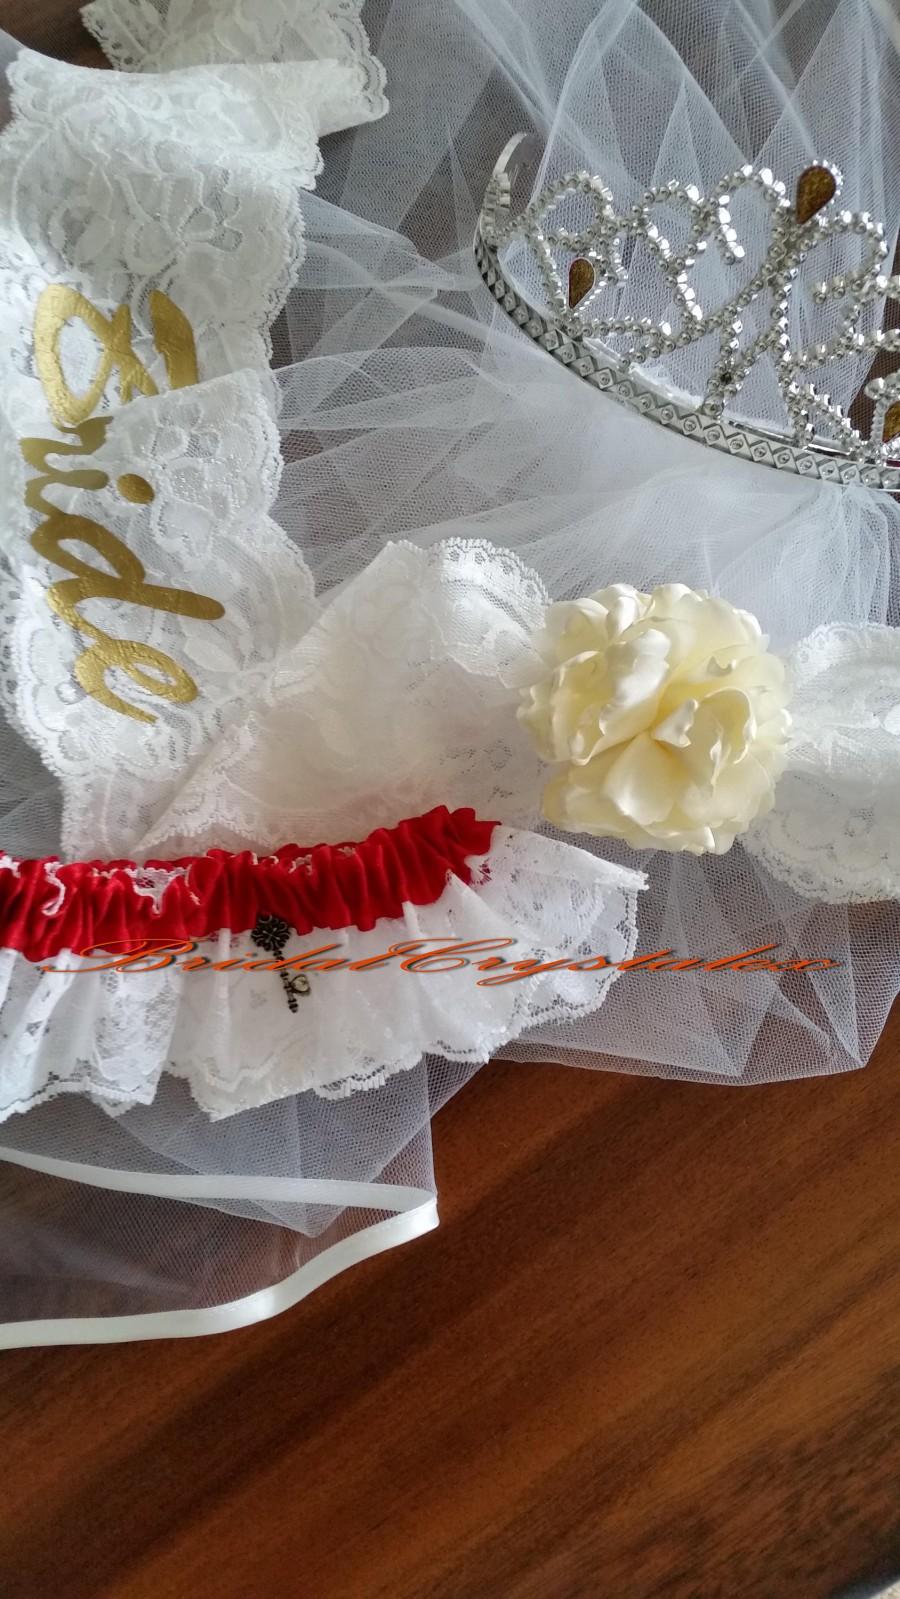 زفاف - Bachelorette Party Wedding Veil and White & Gold Bride Sash and Lace Garter